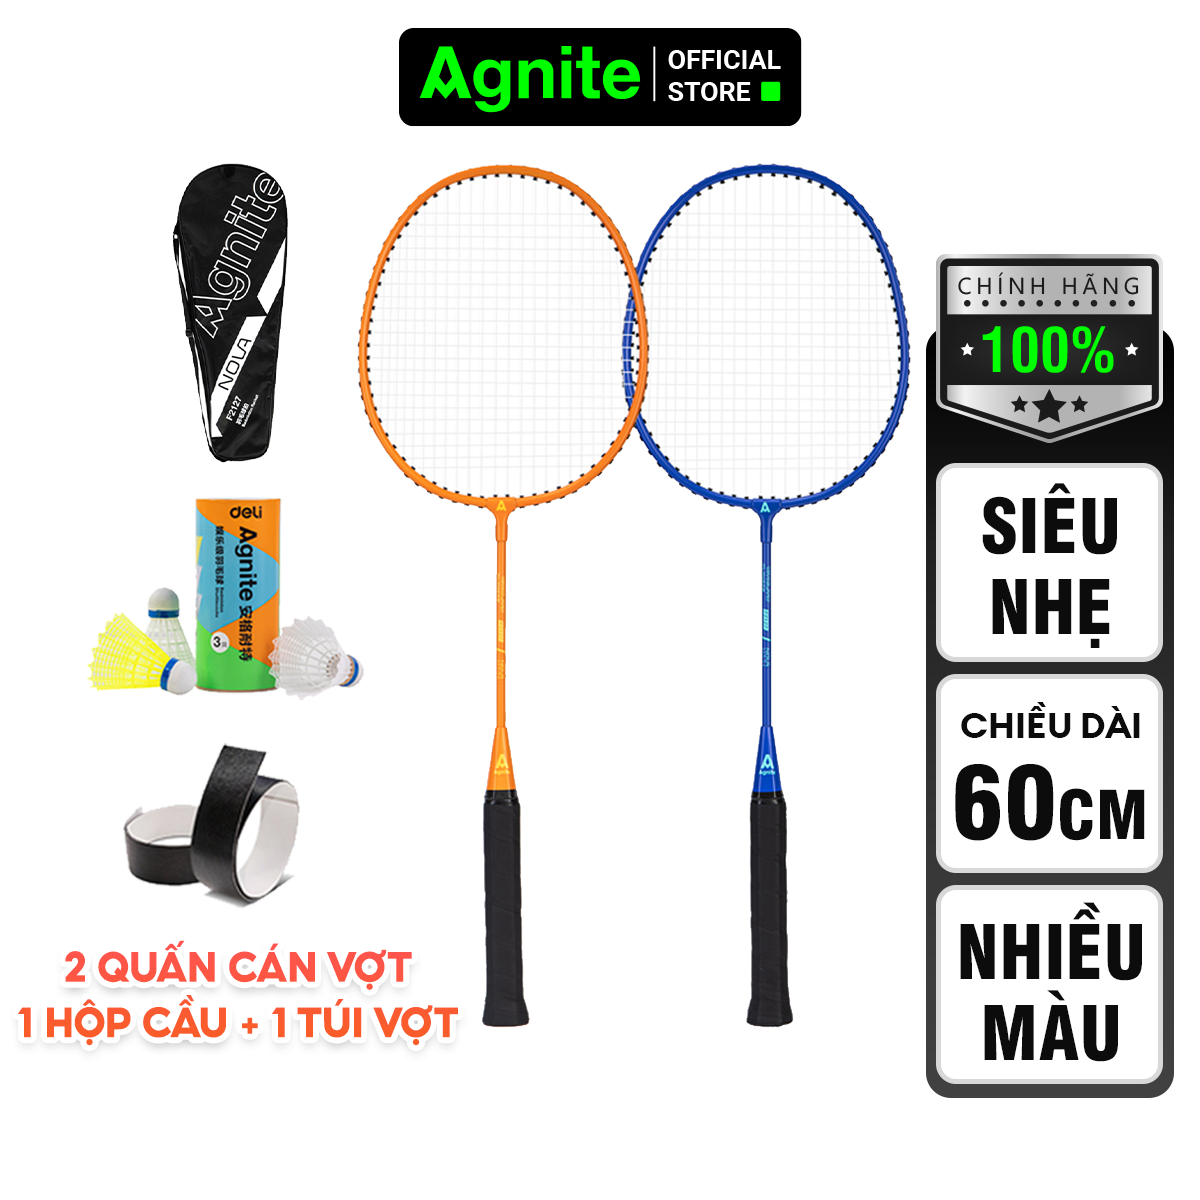 Bộ 2 vợt cầu lông TRẺ EM - HỌC SINH cao cấp Agnite chính hãng, nhẹ, bền, đẹp - tặng kèm hộp cầu, túi cầu và quấn cán vợt